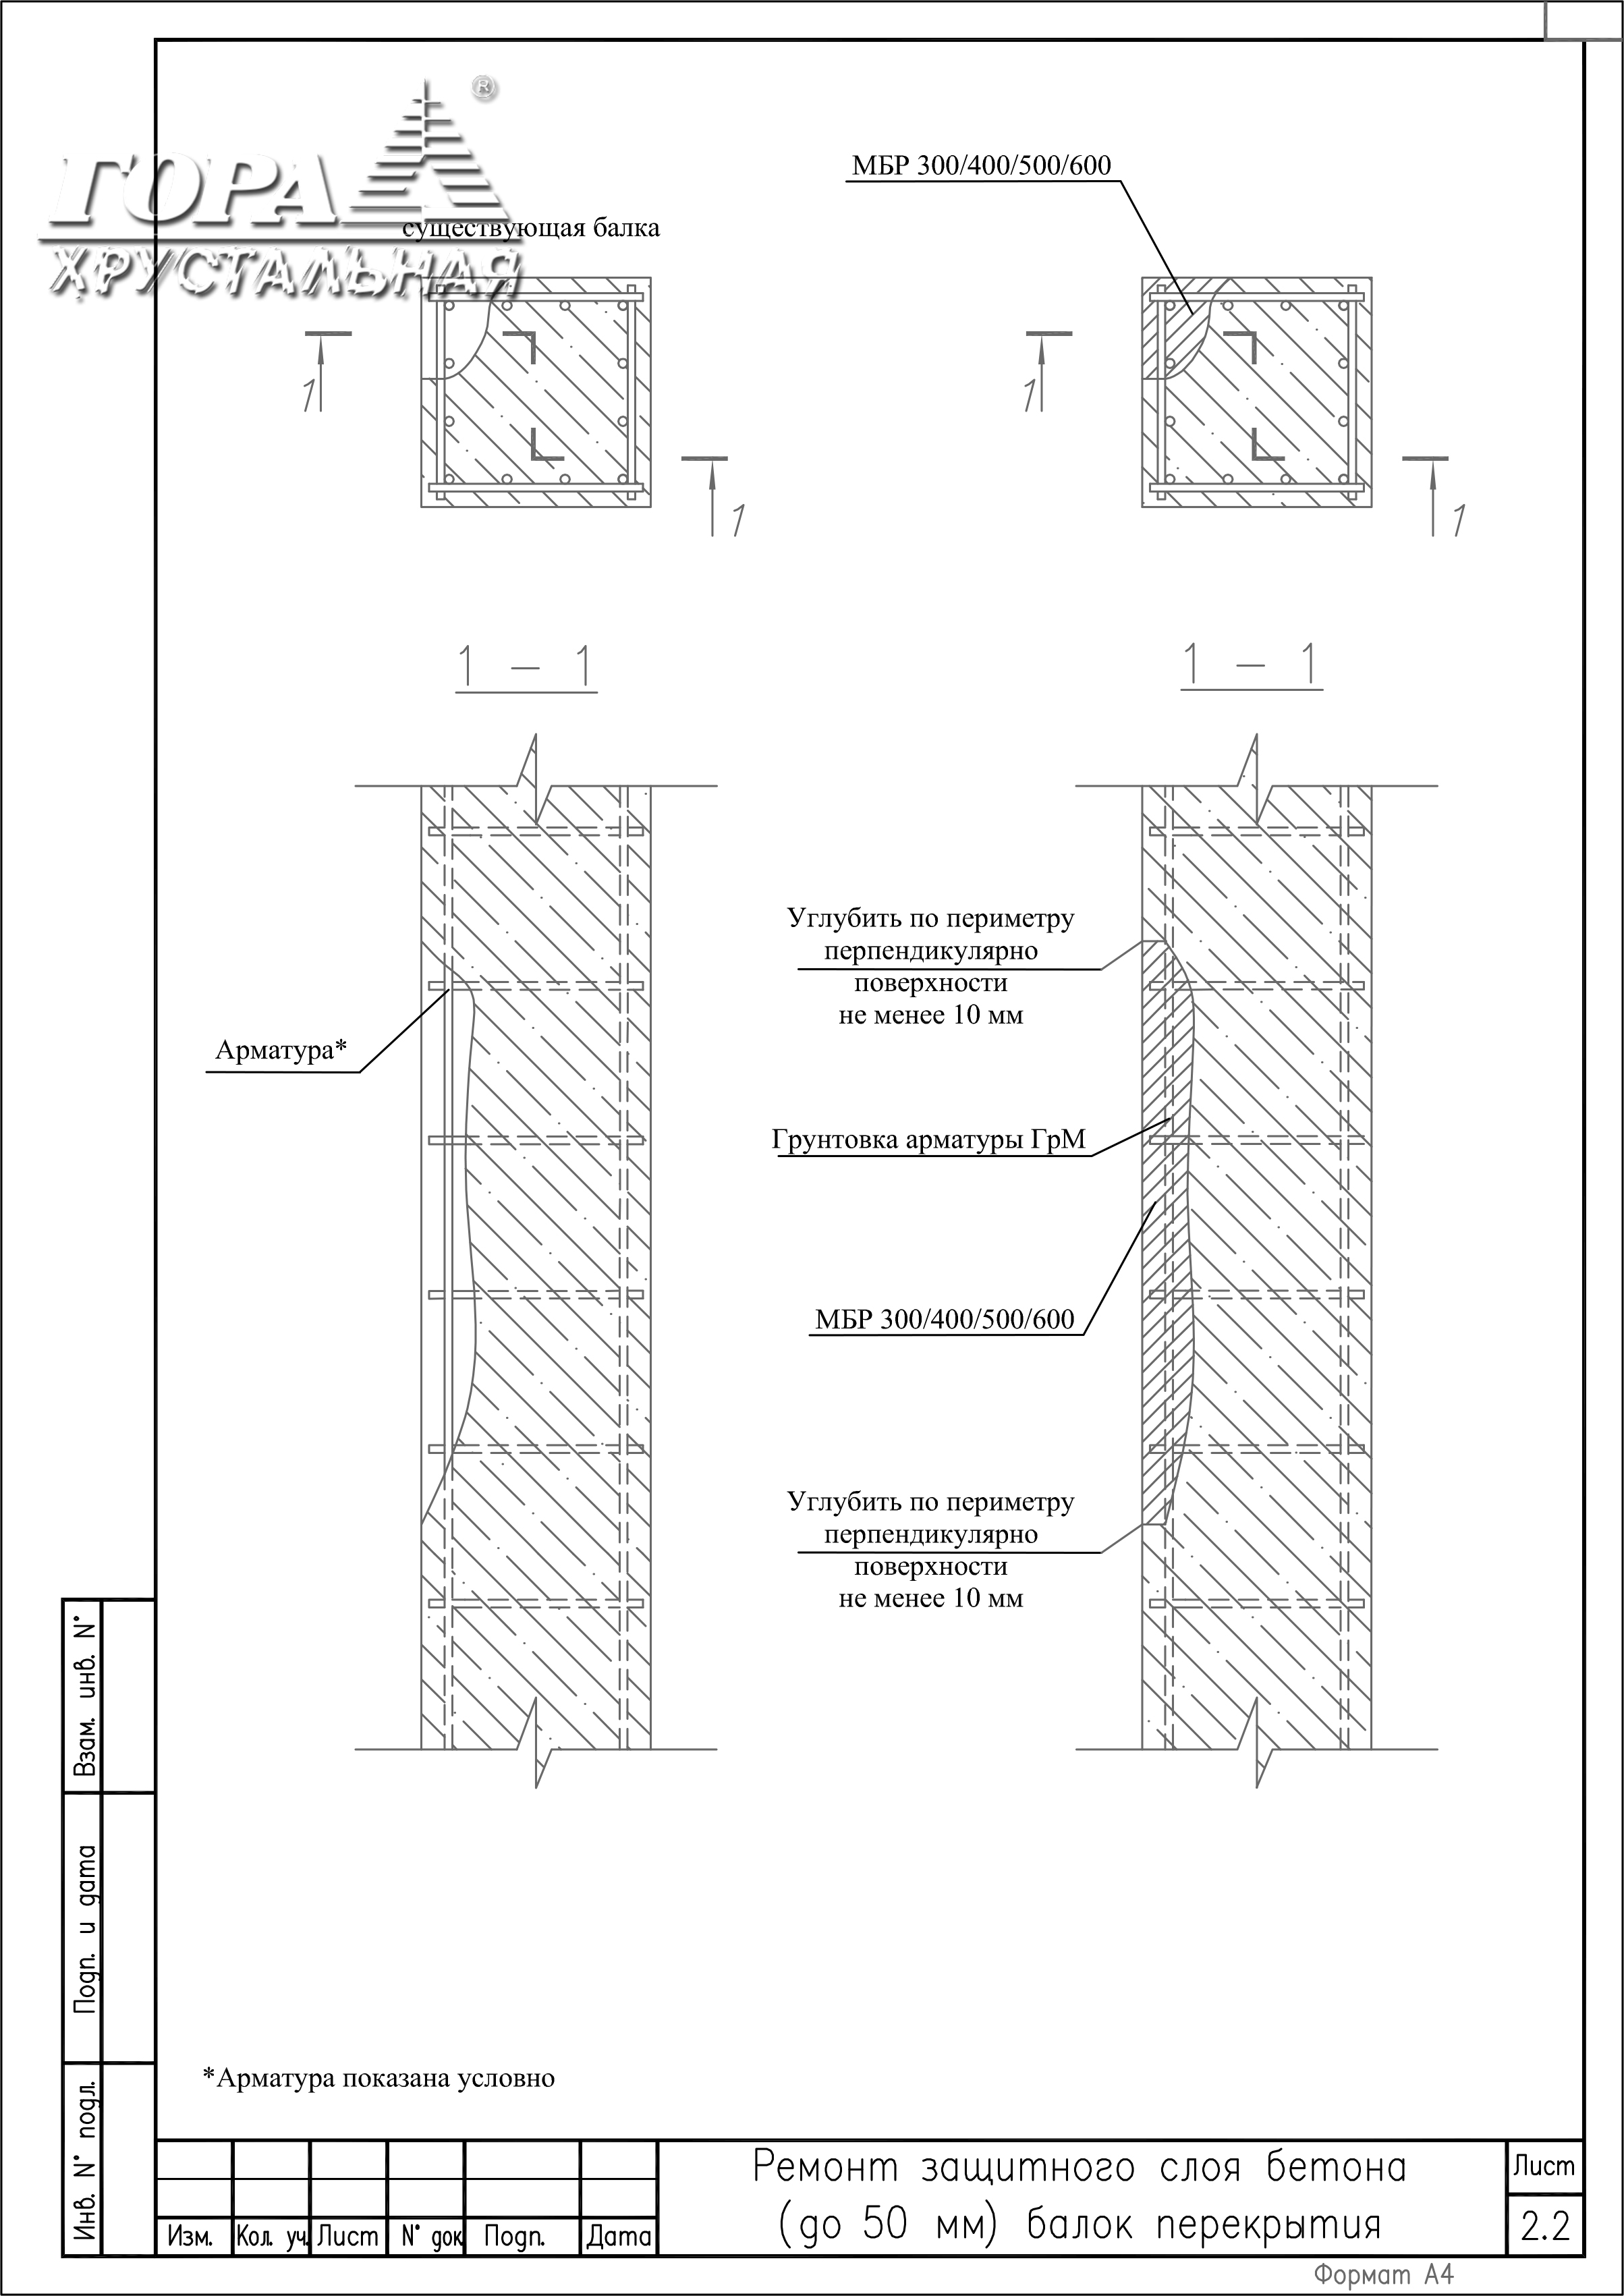 Ремонт защитного слоя бетона (до 50 мм)  балок перекрытия